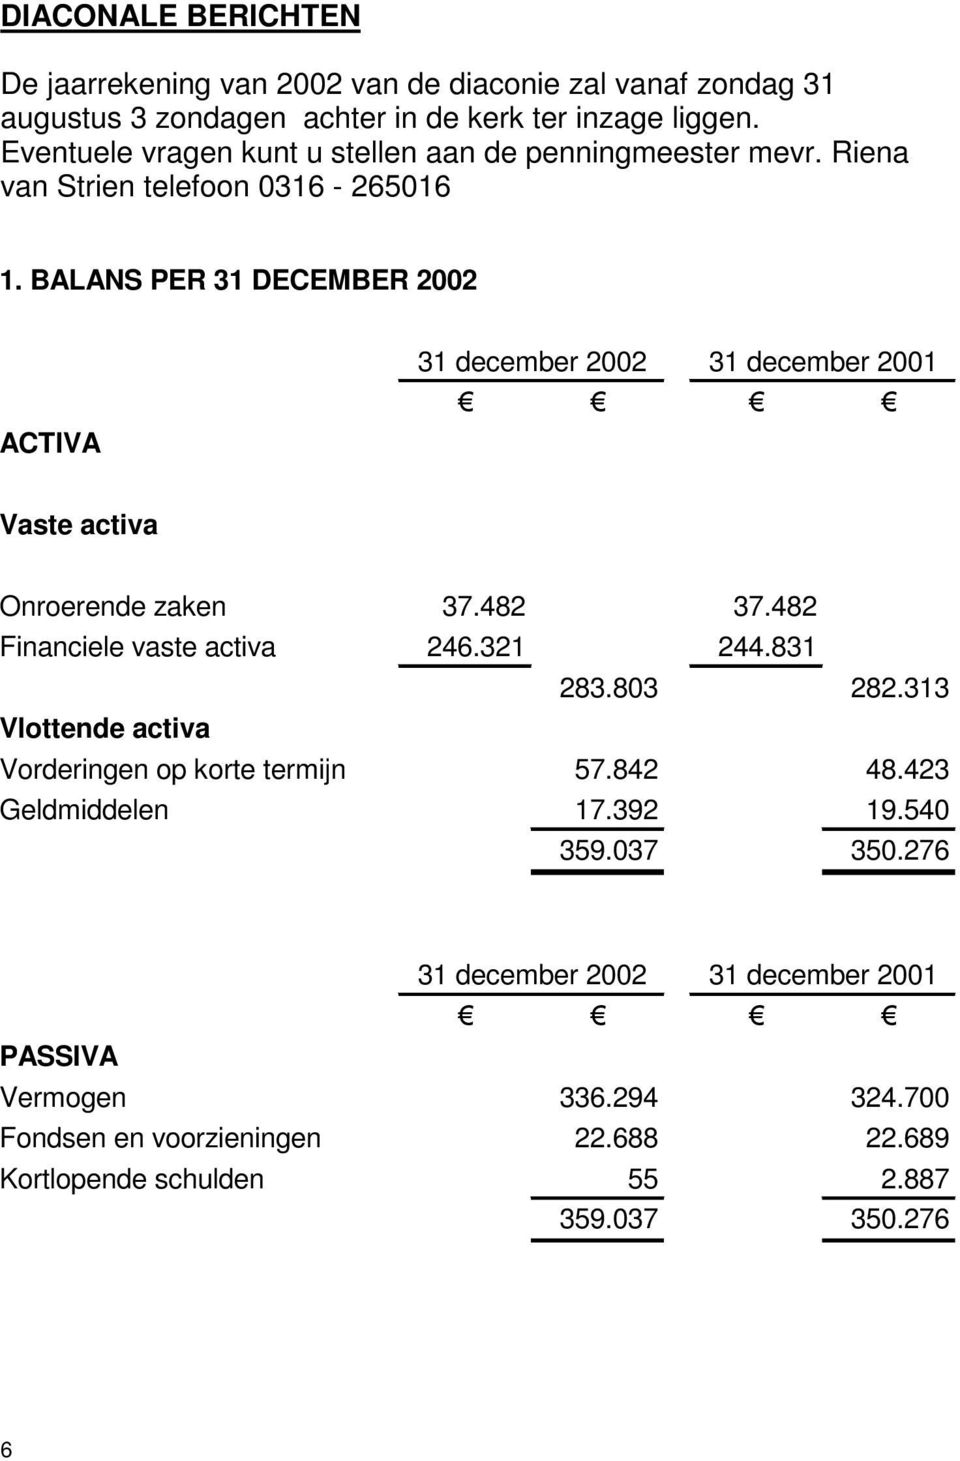 BALANS PER 31 DECEMBER 2002 ACTIVA 31 december 2002 31 december 2001 Vaste activa Onroerende zaken 37.482 37.482 Financiele vaste activa 246.321 244.831 283.803 282.